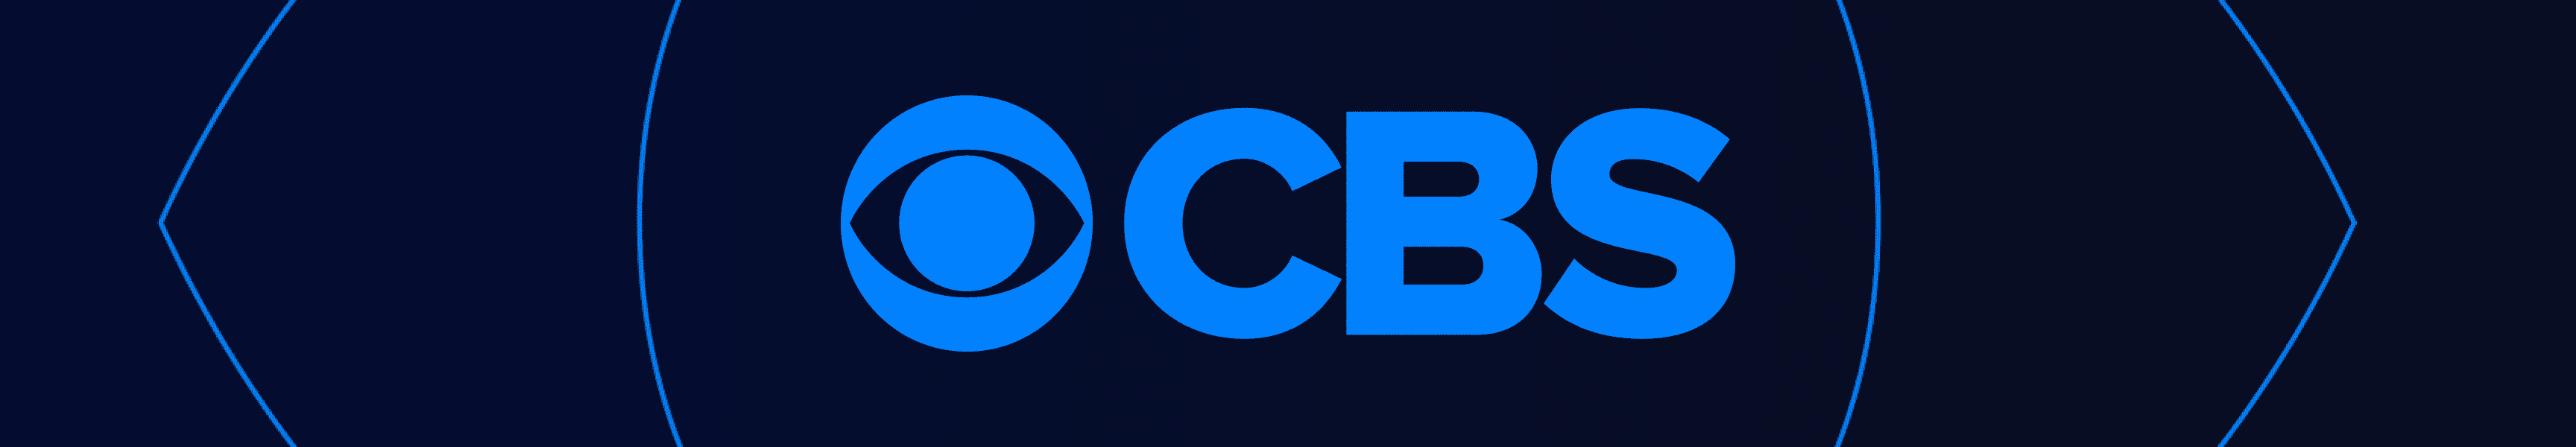 Polos de CBS